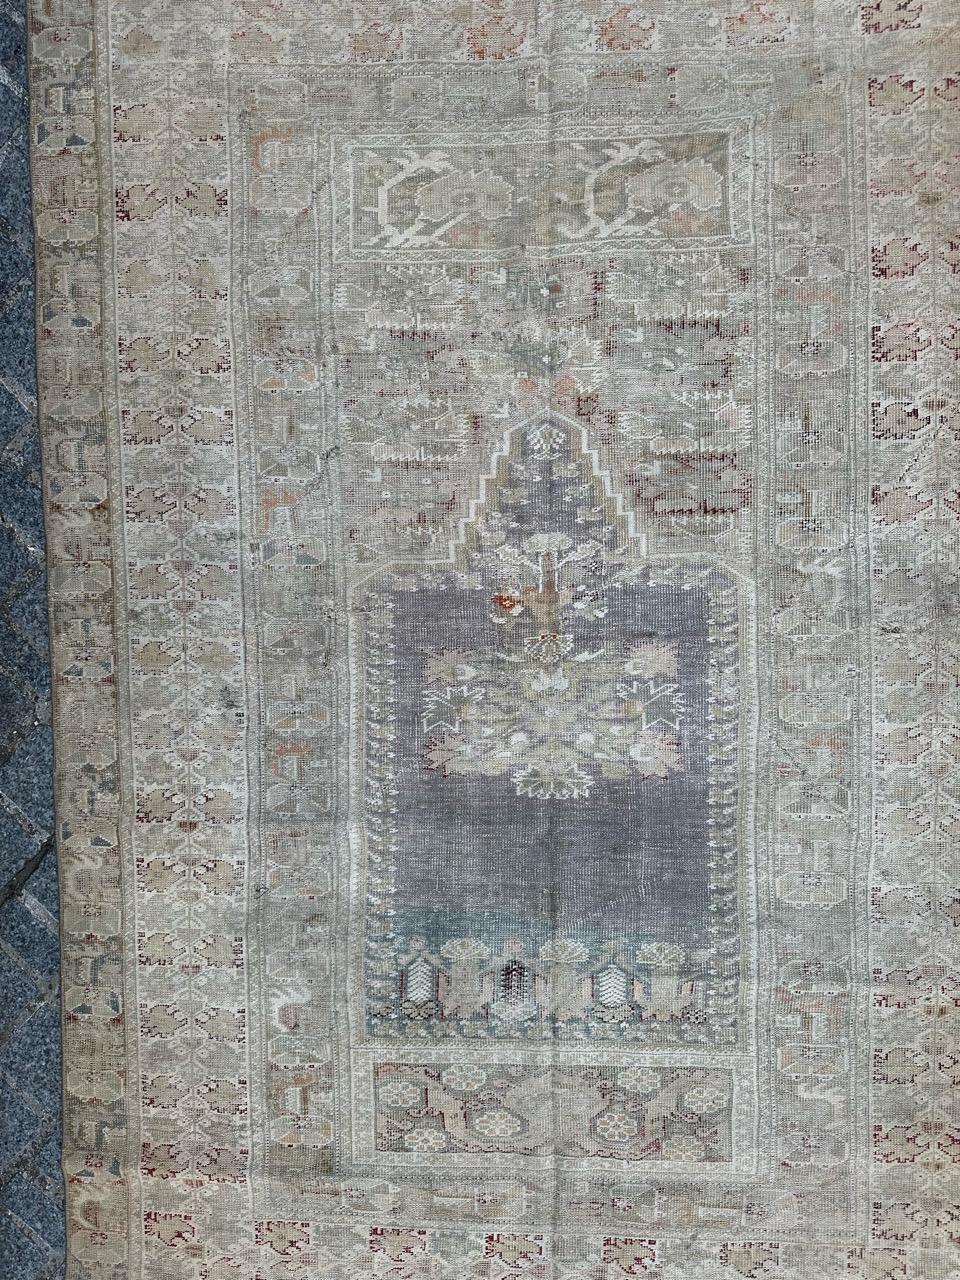 Hübscher türkischer Teppich aus dem frühen 19. Jahrhundert aus Yordes, mit einem schönen Mihrab-Muster aus sehr alten türkischen Teppichen und schönen natürlichen Farben, mit gleichmäßigen Gebrauchsspuren und kleinen Schäden, die auf das Alter und